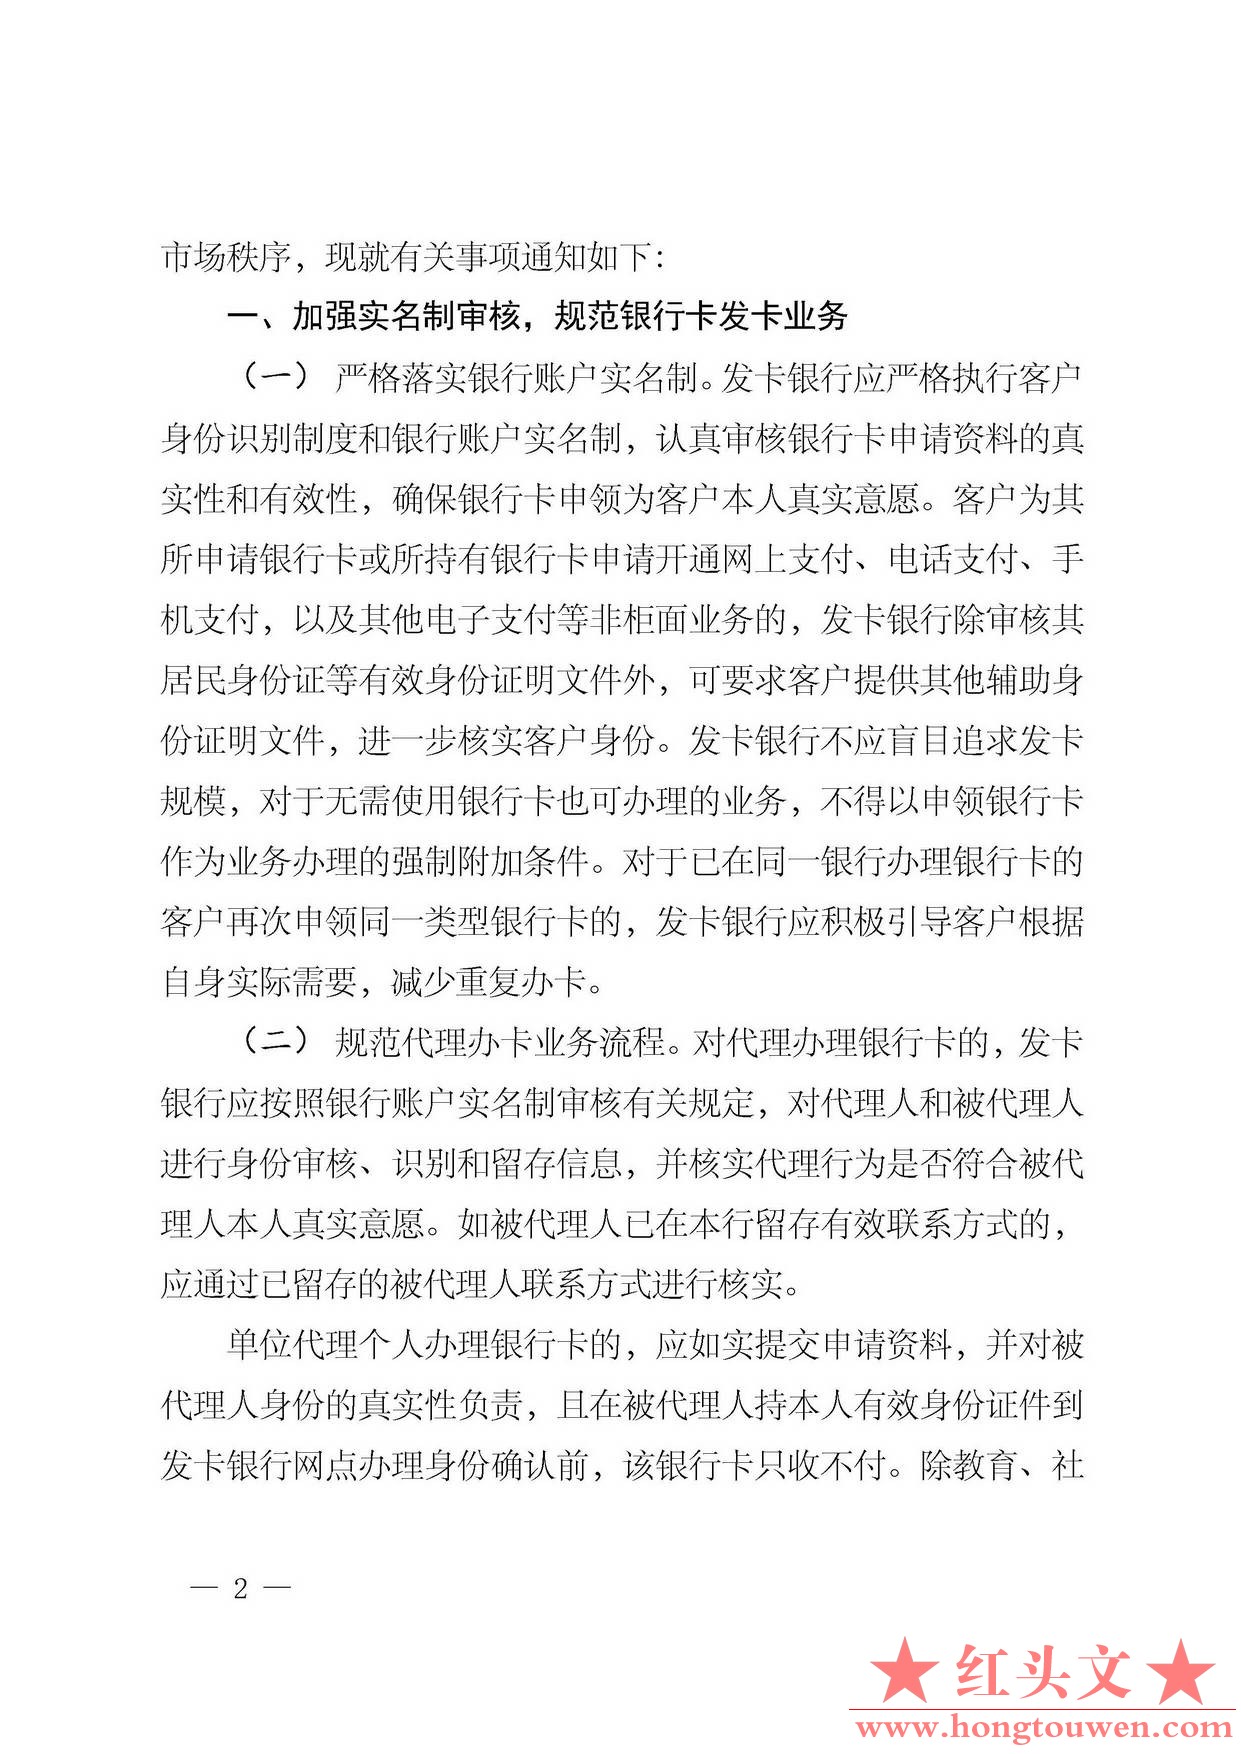 银发[2014]5号-中国人民银行关于加强银行卡业务管理的通知_页面_2.jpg